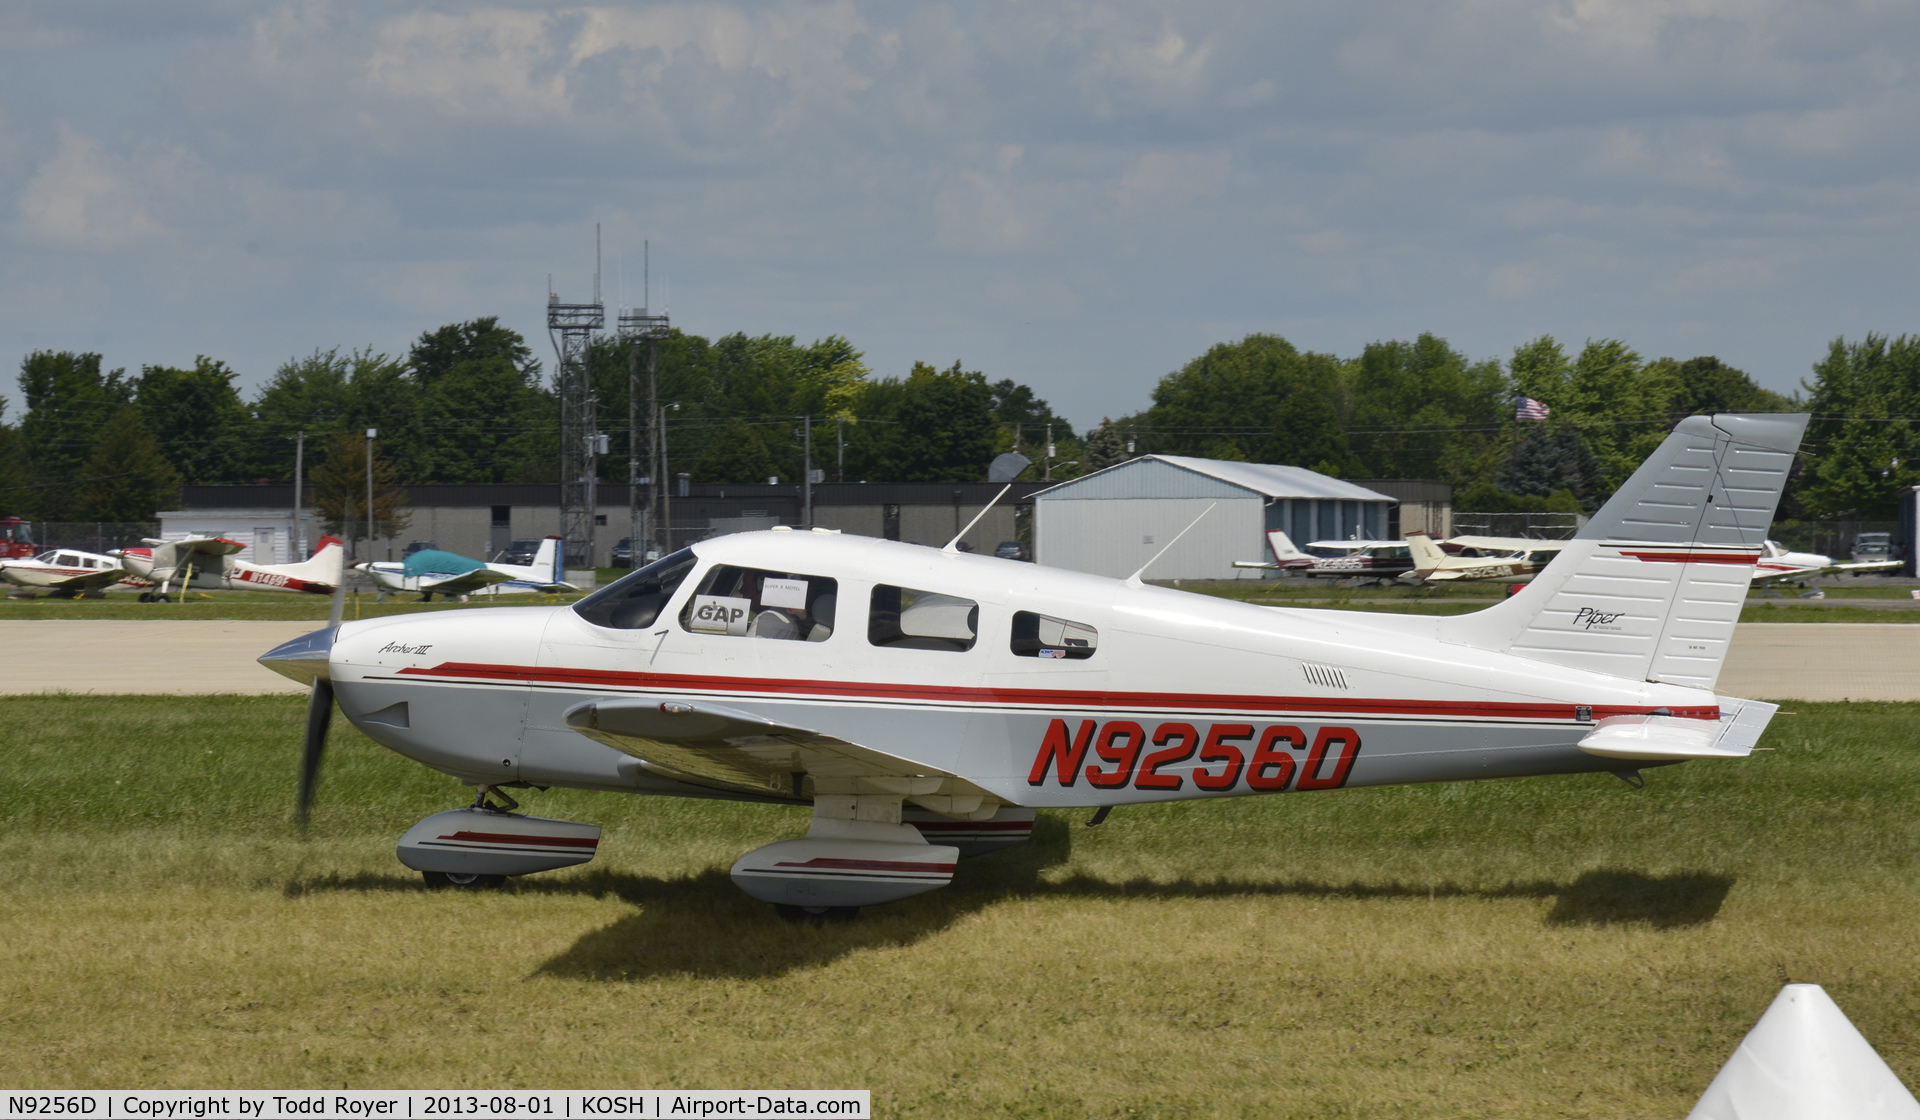 N9256D, 1995 Piper PA-28-181 Archer II C/N 2890227, Airventure 2013